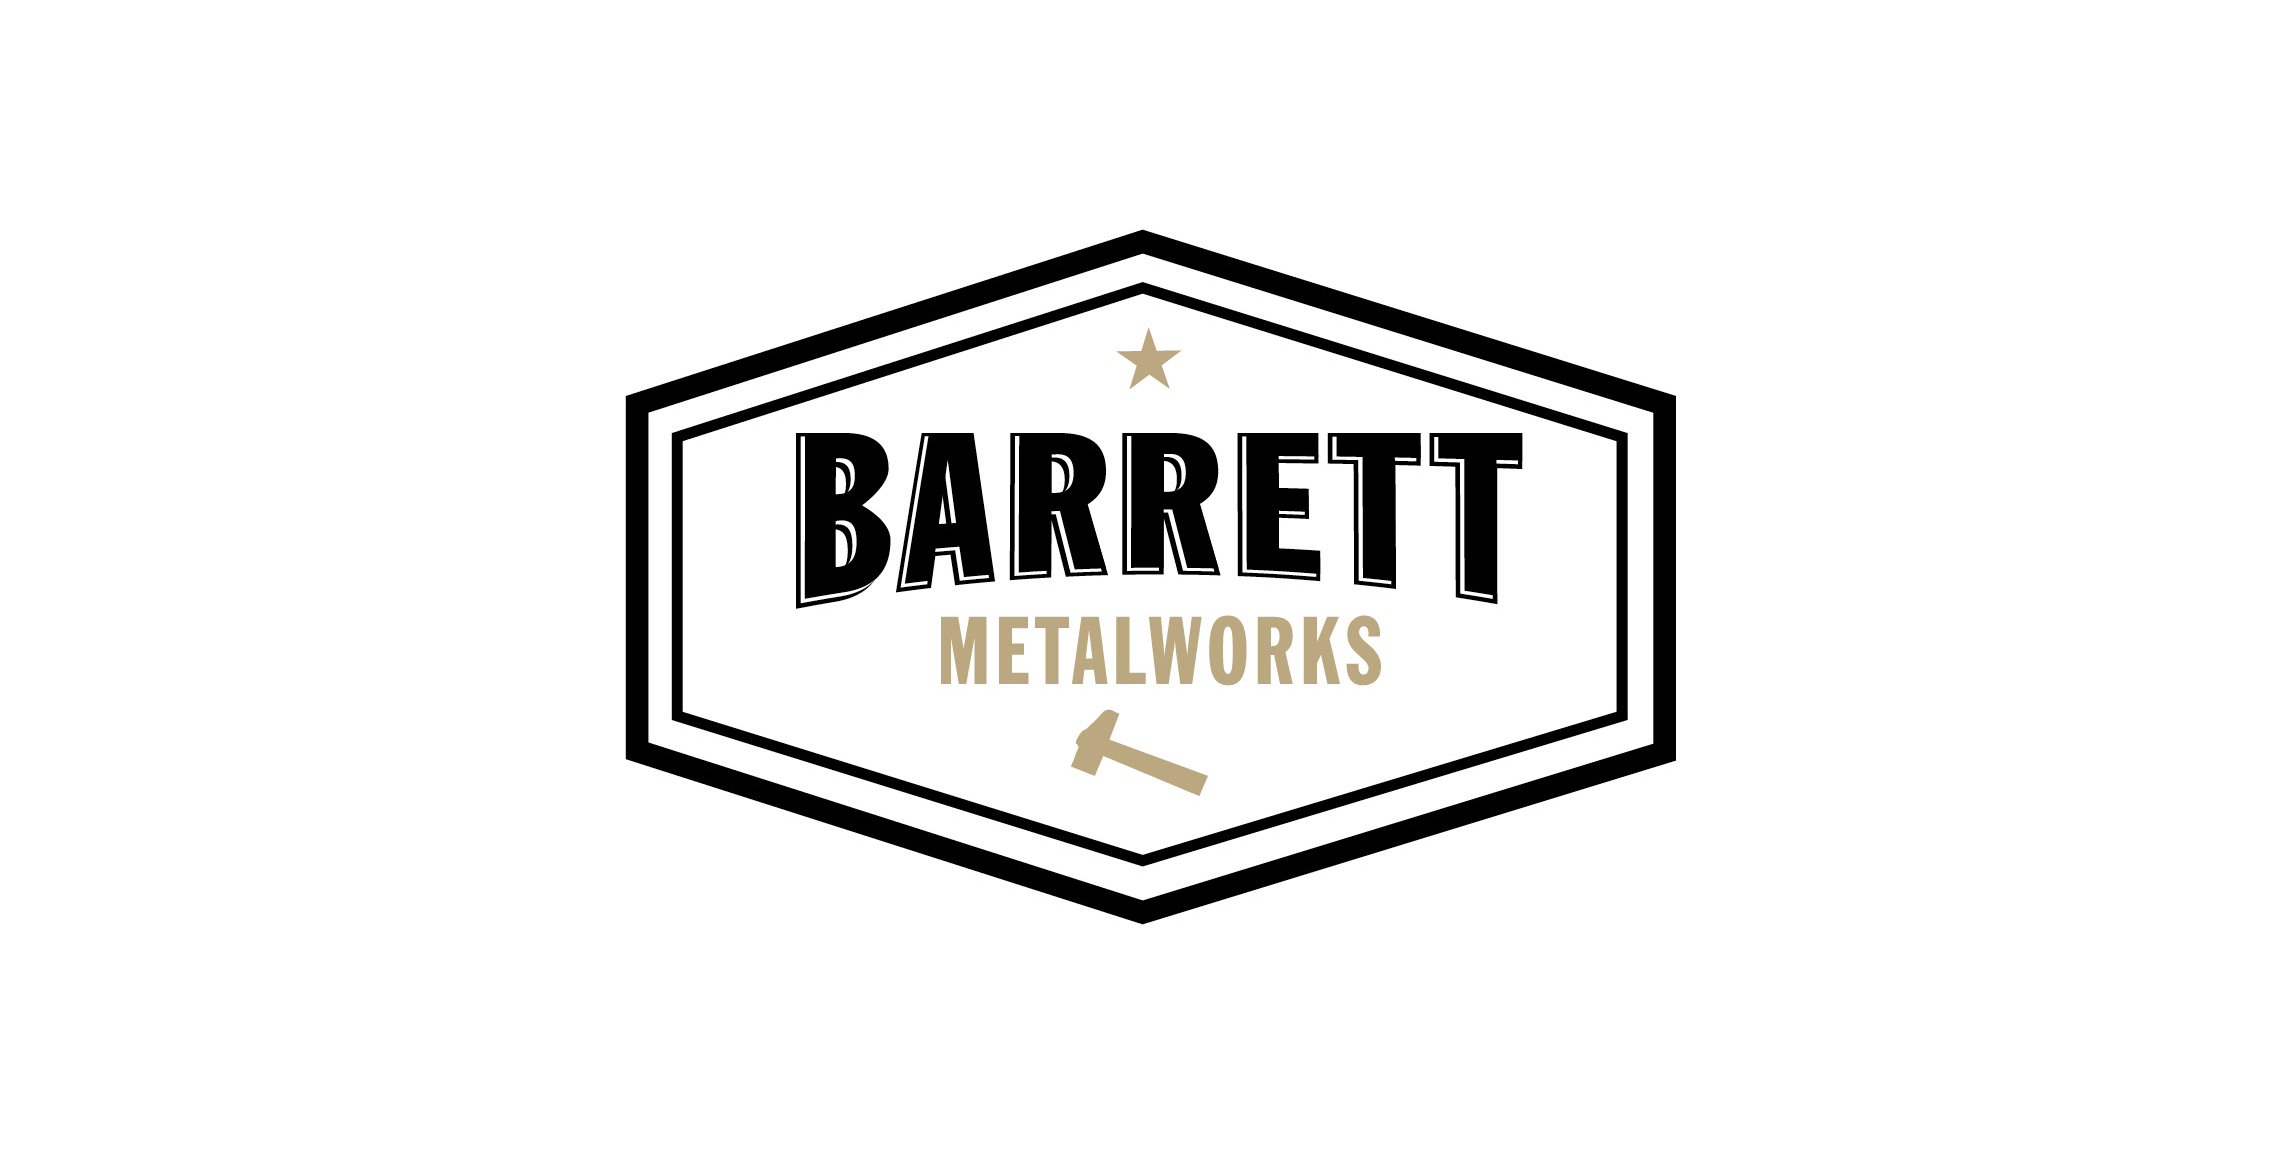 David Barrett Metalworks